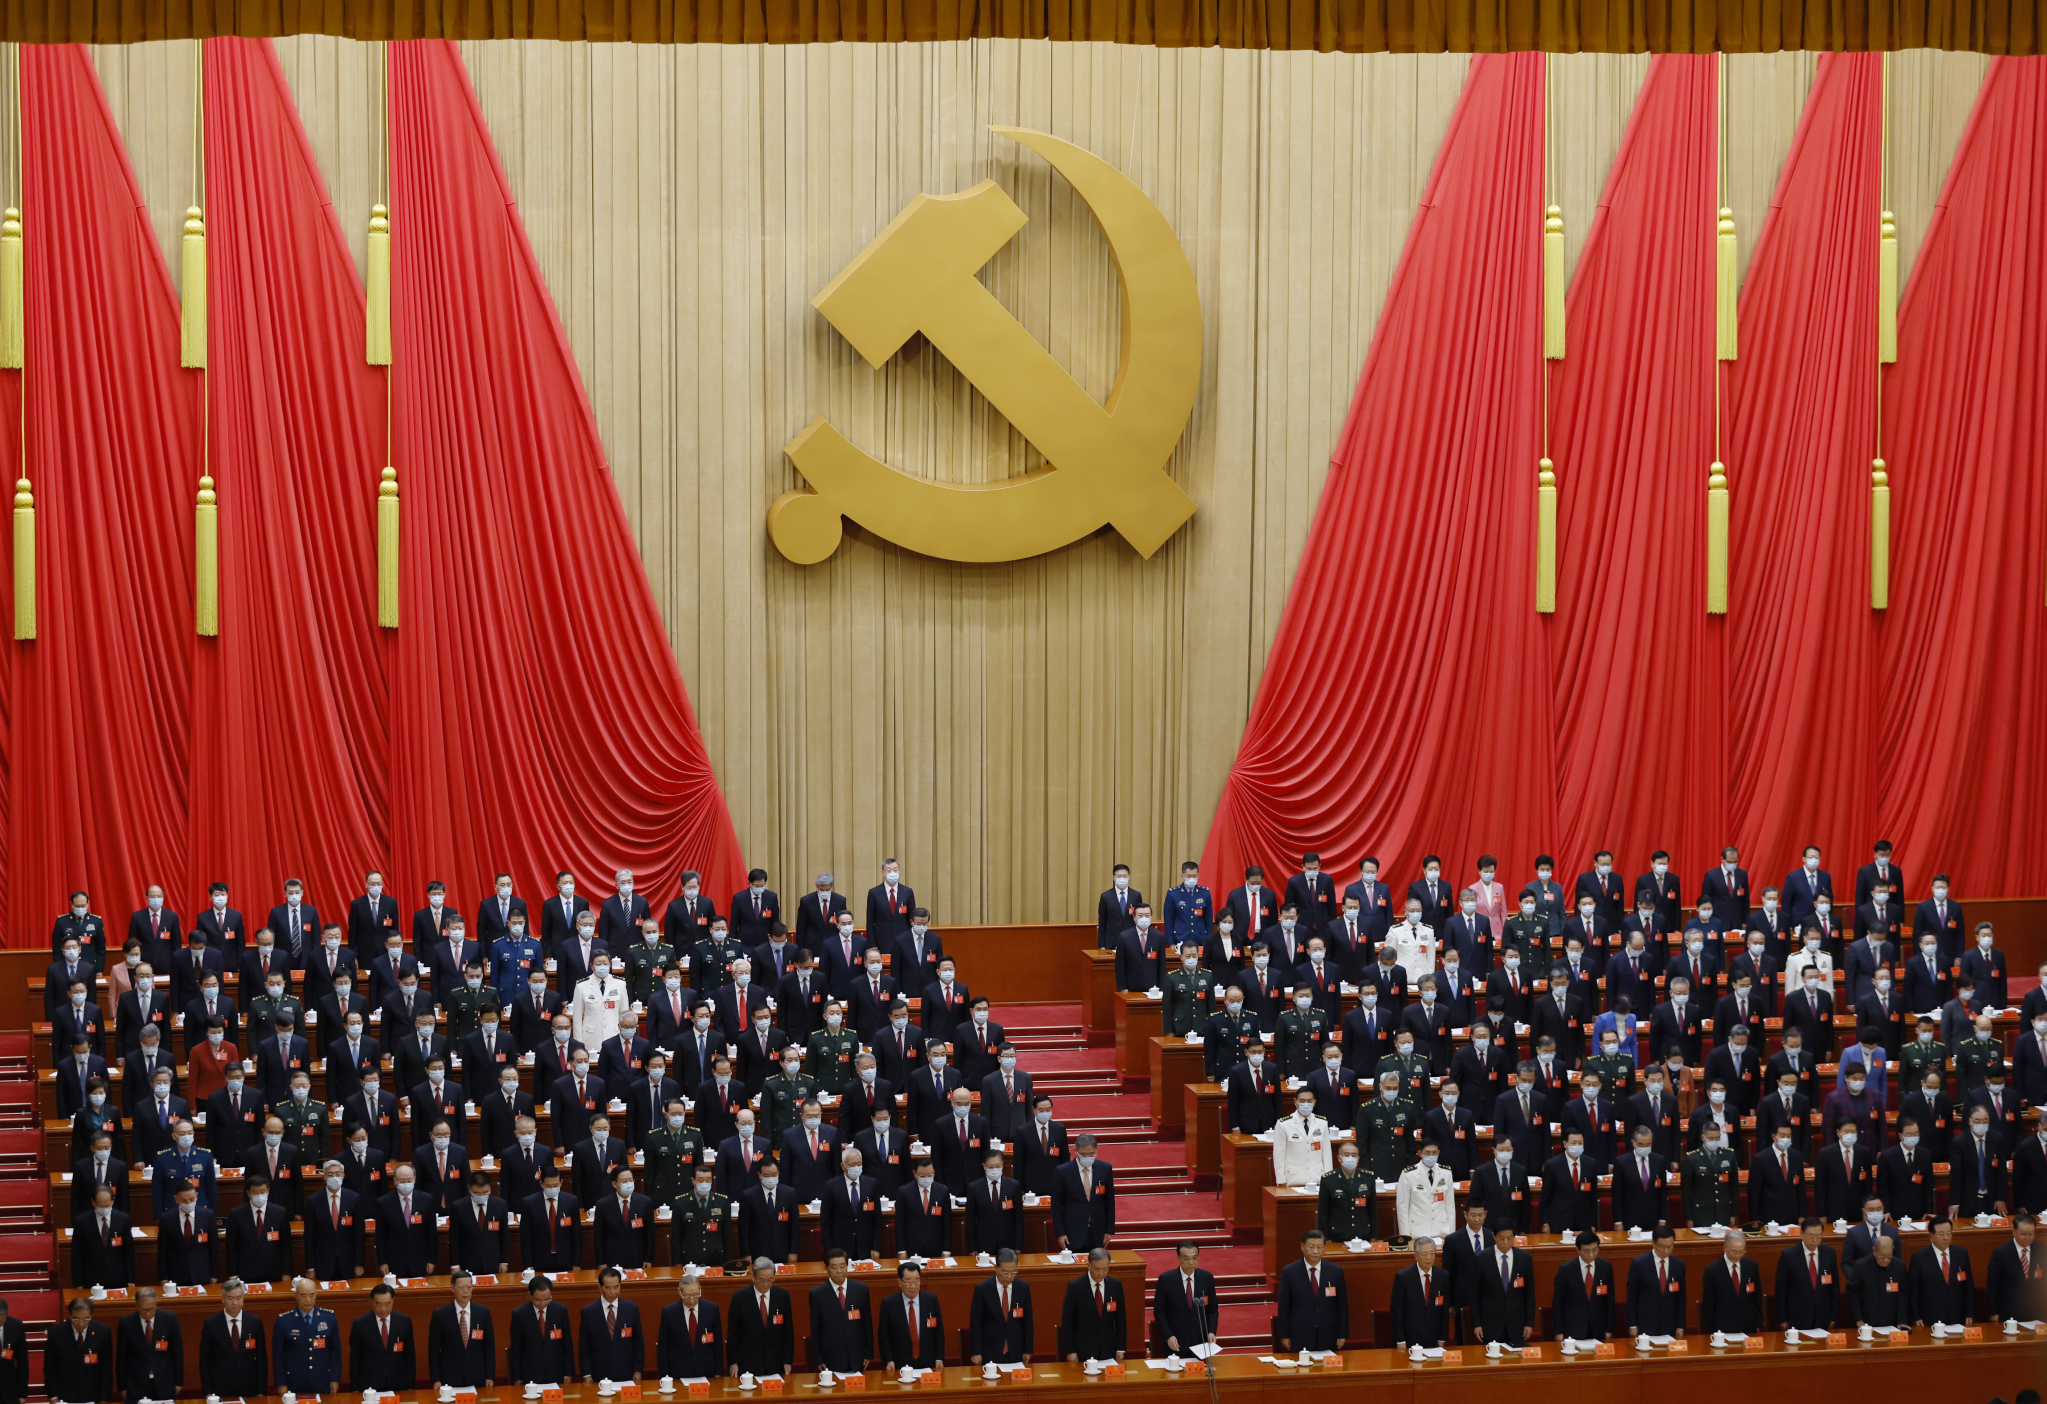 OVO SU GLAVNI ZADACI KINE Đinping podneo izveštaj nacionalnom kongresu KPK